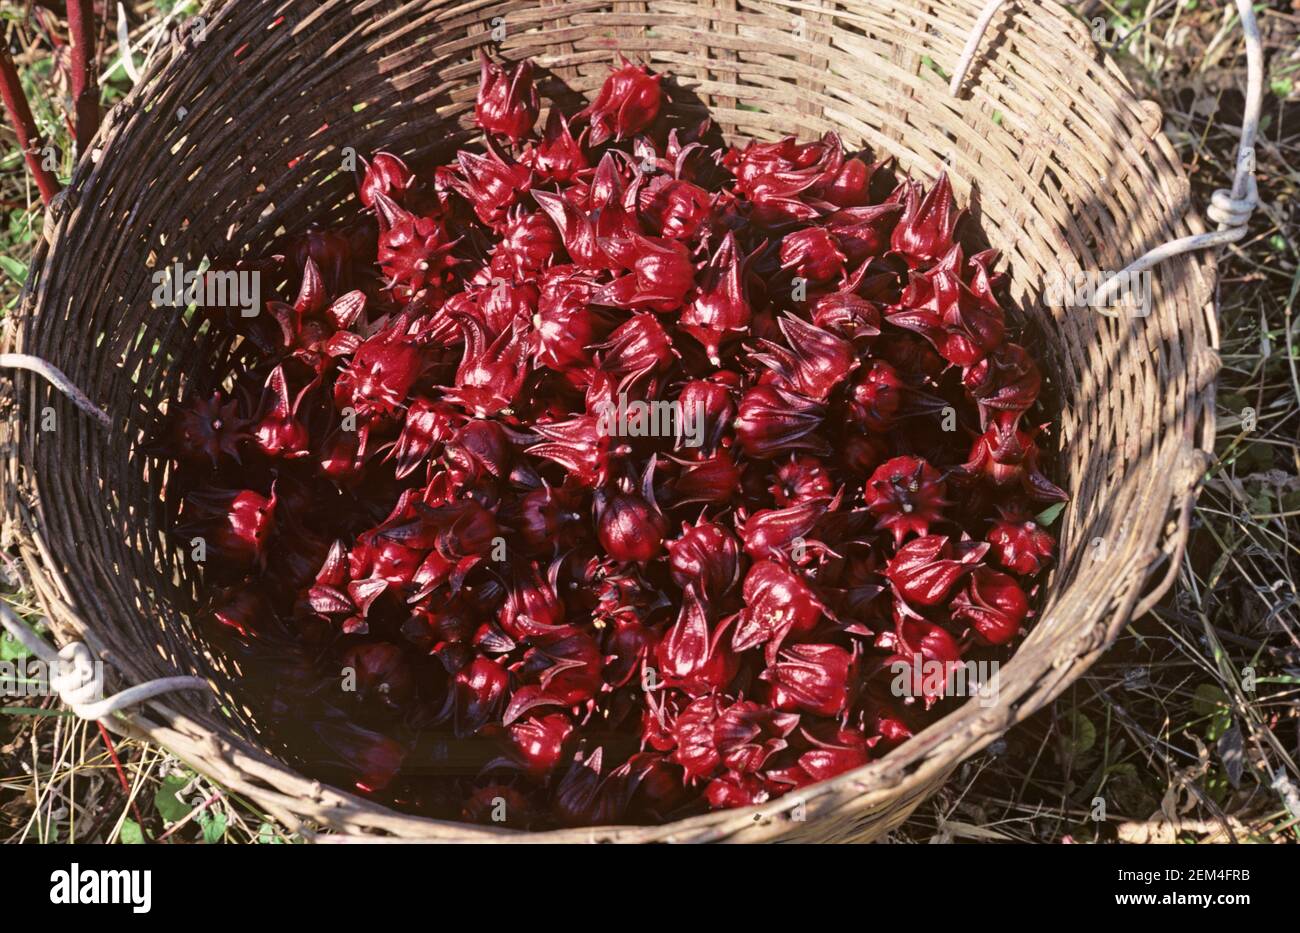 Geerntete rote Okra oder roselle (Hibiscus sabdariffa) Obst in der Medizin, Süßwaren und Tee Herstellung, Thailand verwendet Stockfoto